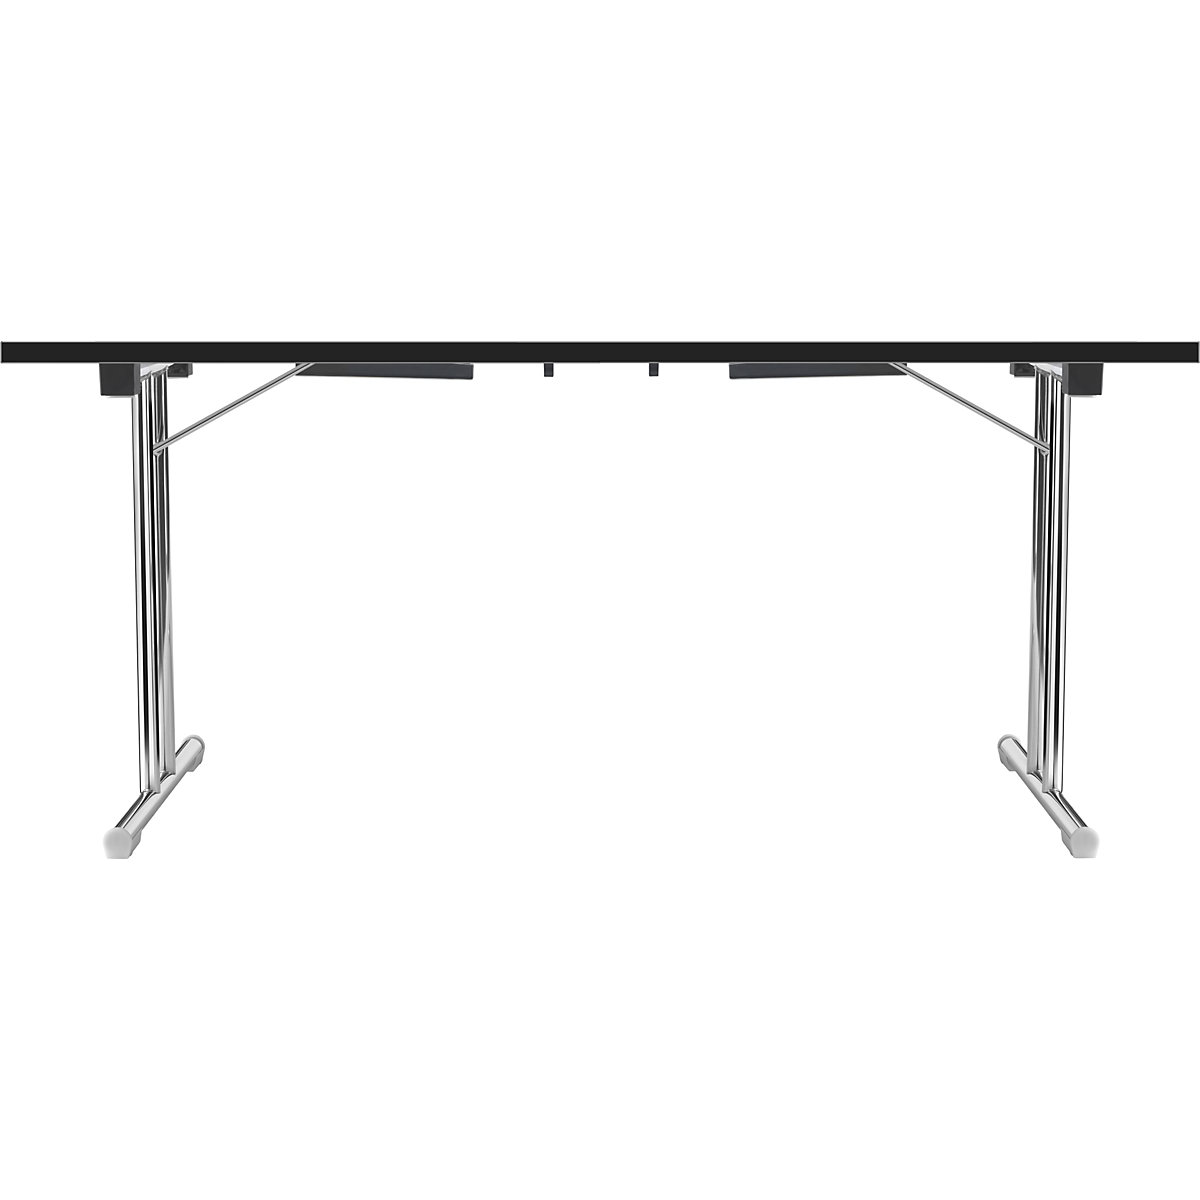 Tavolo pieghevole con basamento a T doppio, telaio in tubo tondo d'acciaio, cromato, bianco/nero, largh. x prof. 1400 x 700 mm-2